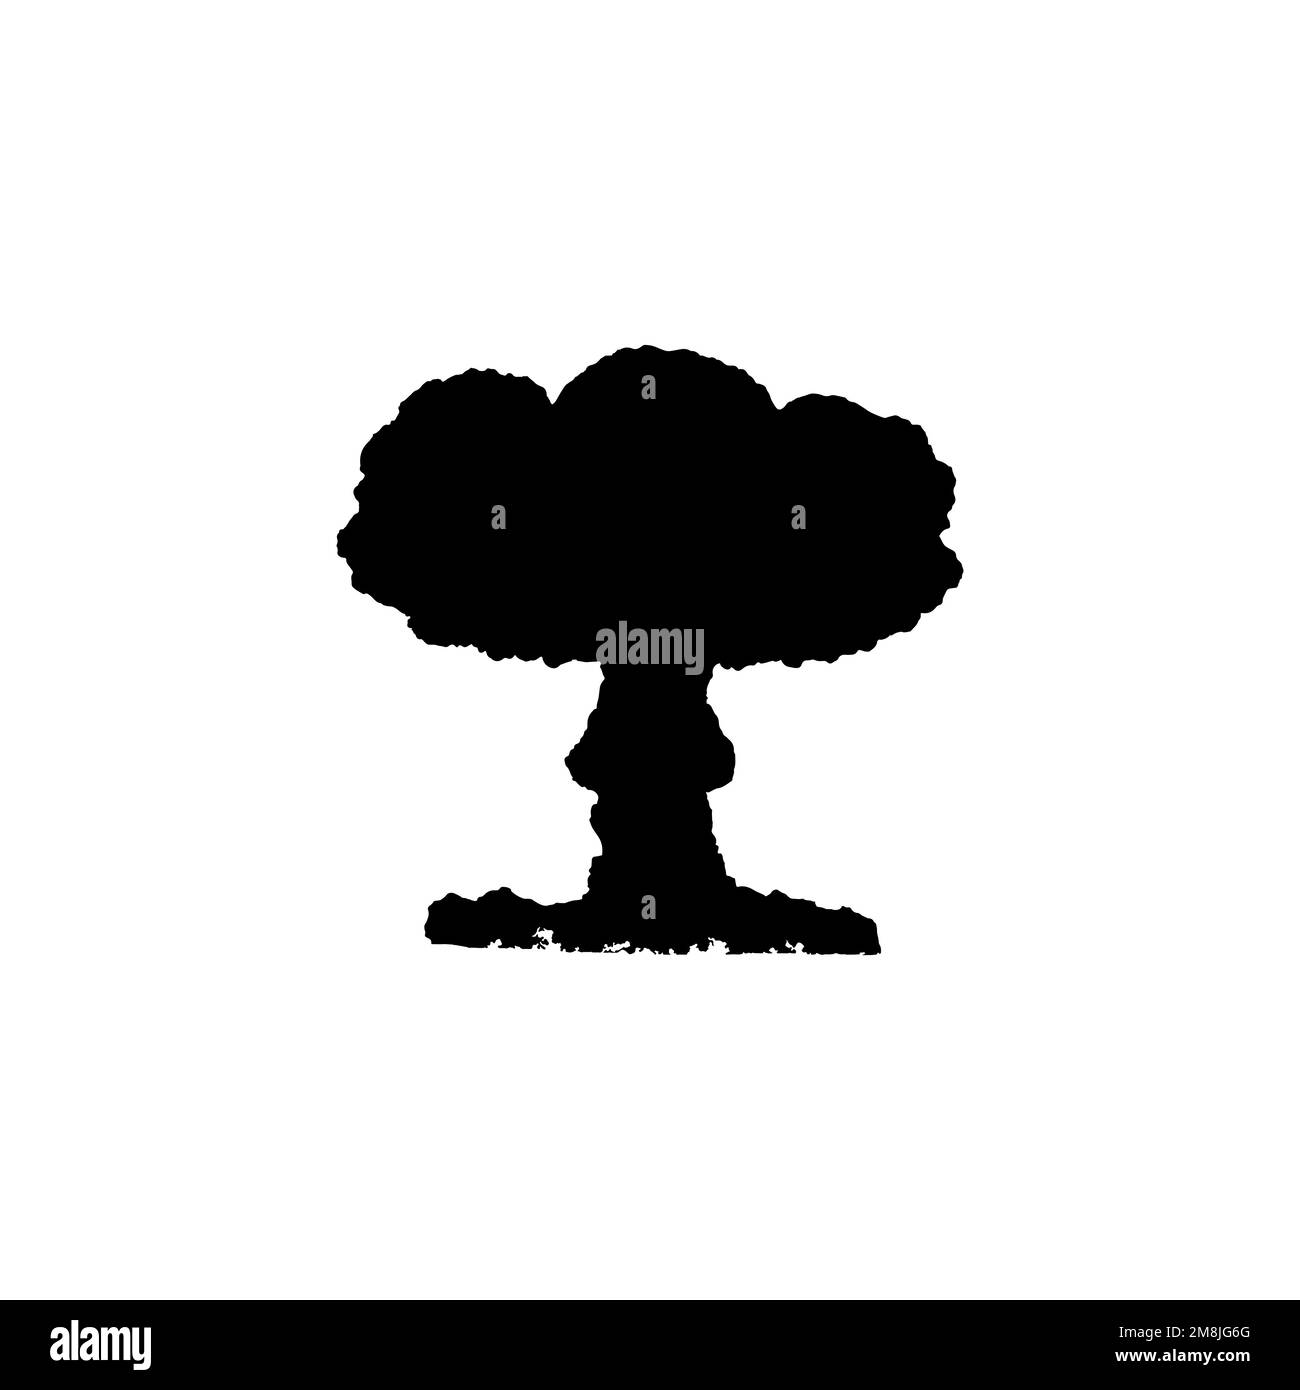 Icona bomba Atom. Stile semplice senza simbolo di sfondo di un poster di guerra. Atom bomba marchio logo elemento di design. Stampa di t-shirt Atom Bomba. vettore per adesivo. Illustrazione Vettoriale